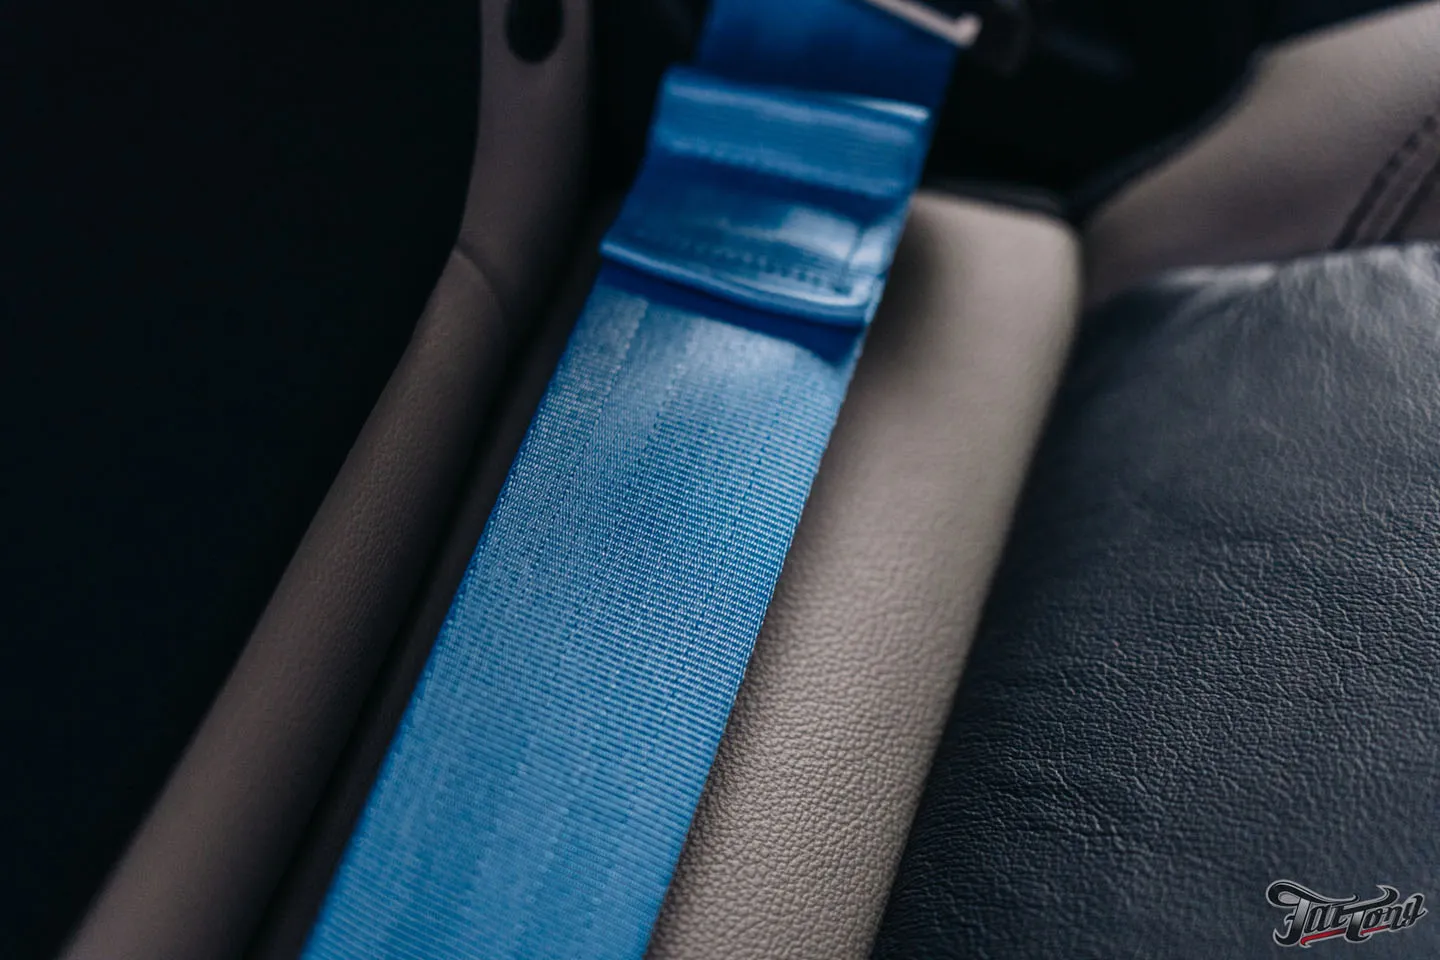 Тюнинг Ford Bronco, часть 2: новые цветные ремни безопасности. Как это делается?